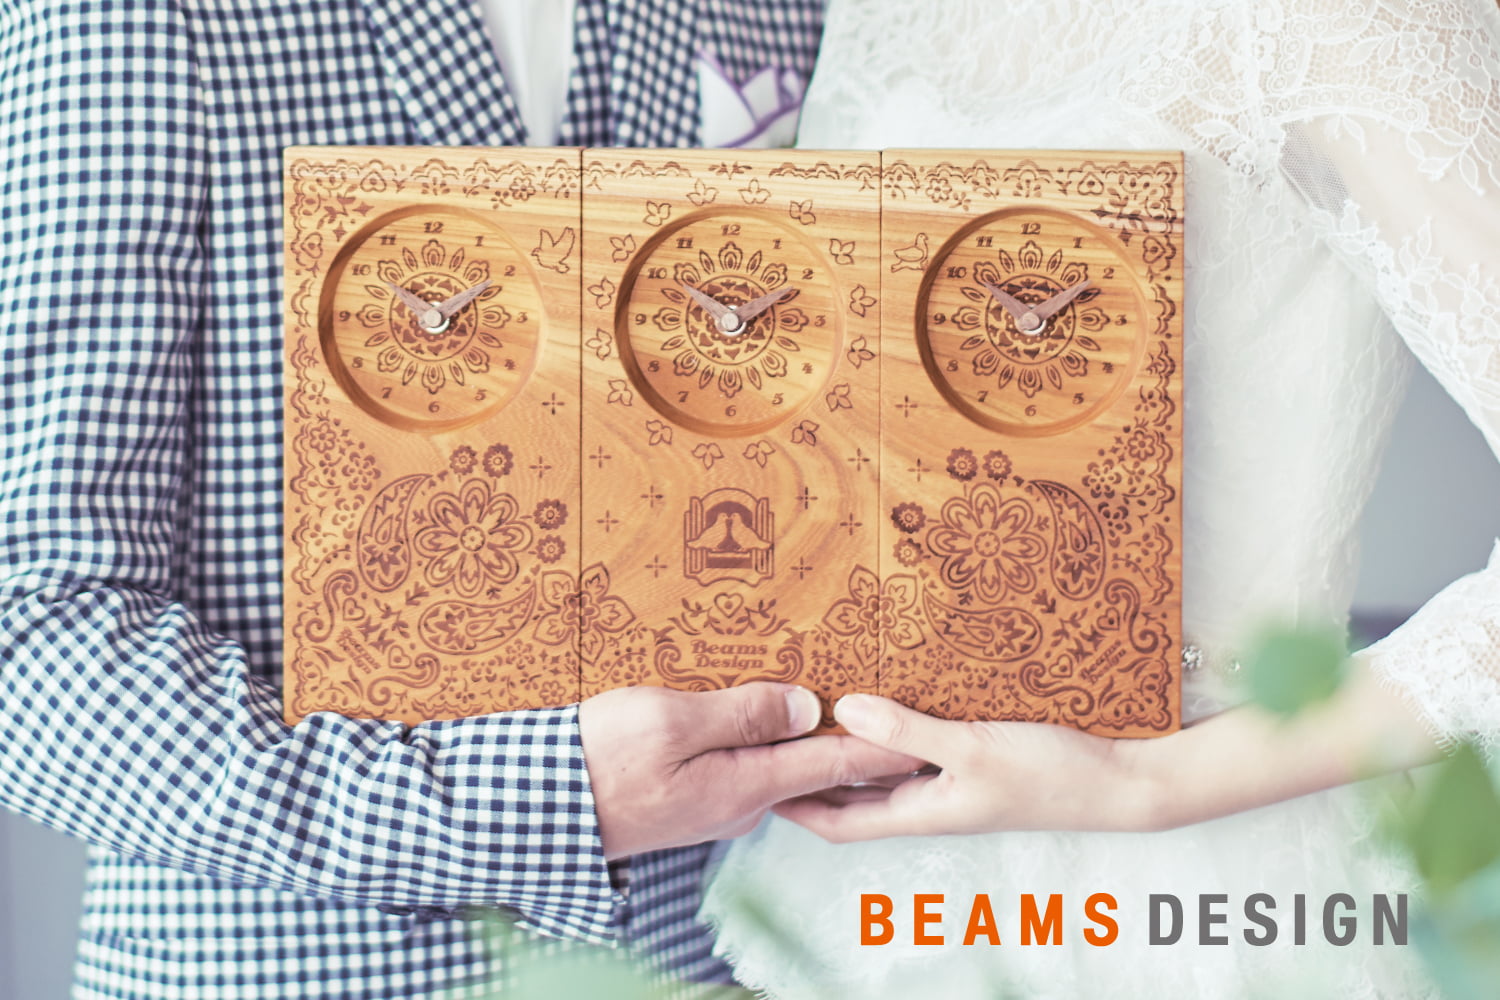 【BEAMS DESIGN】独自のデザインが人気、BEAMS DESIGNの三連時計。